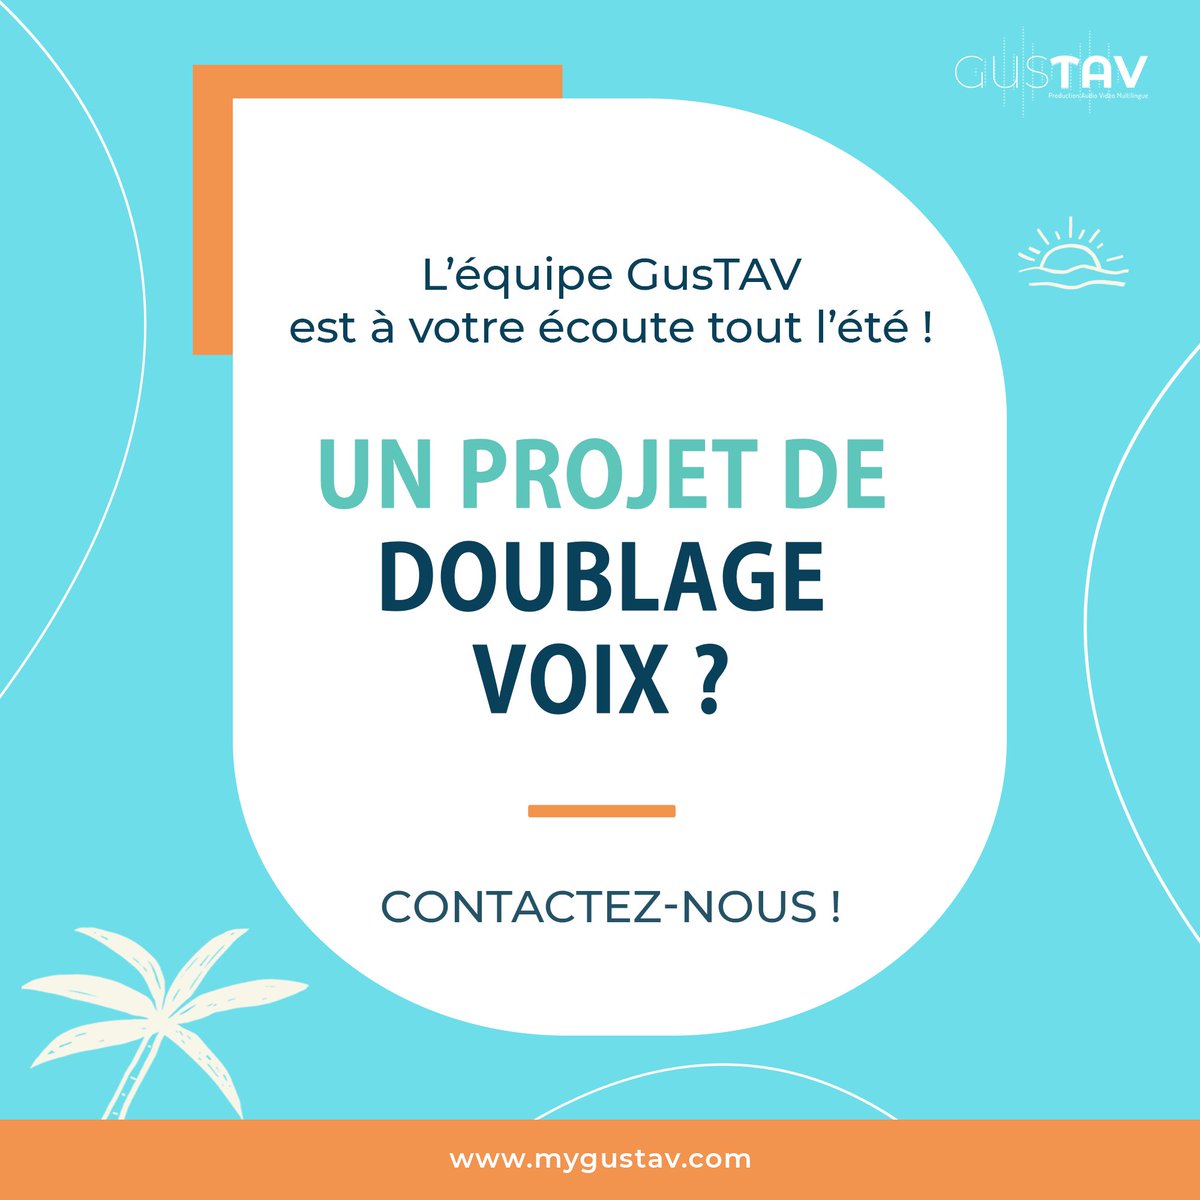 L’équipe #GusTAV est à votre écoute tout l’été !
𝐔𝐧 𝐩𝐫𝐨𝐣𝐞𝐭 𝐝𝐞 𝐝𝐨𝐮𝐛𝐥𝐚𝐠𝐞 𝐯𝐨𝐢𝐱 ?
💌 Contactez-nous :  mygustav.com/contactez-nous/
🔎 𝐄𝐧 𝐬𝐚𝐯𝐨𝐢𝐫 𝐩𝐥𝐮𝐬 : mygustav.com/nos-solutions/…
#audio #video #audiovisuel #contact #été